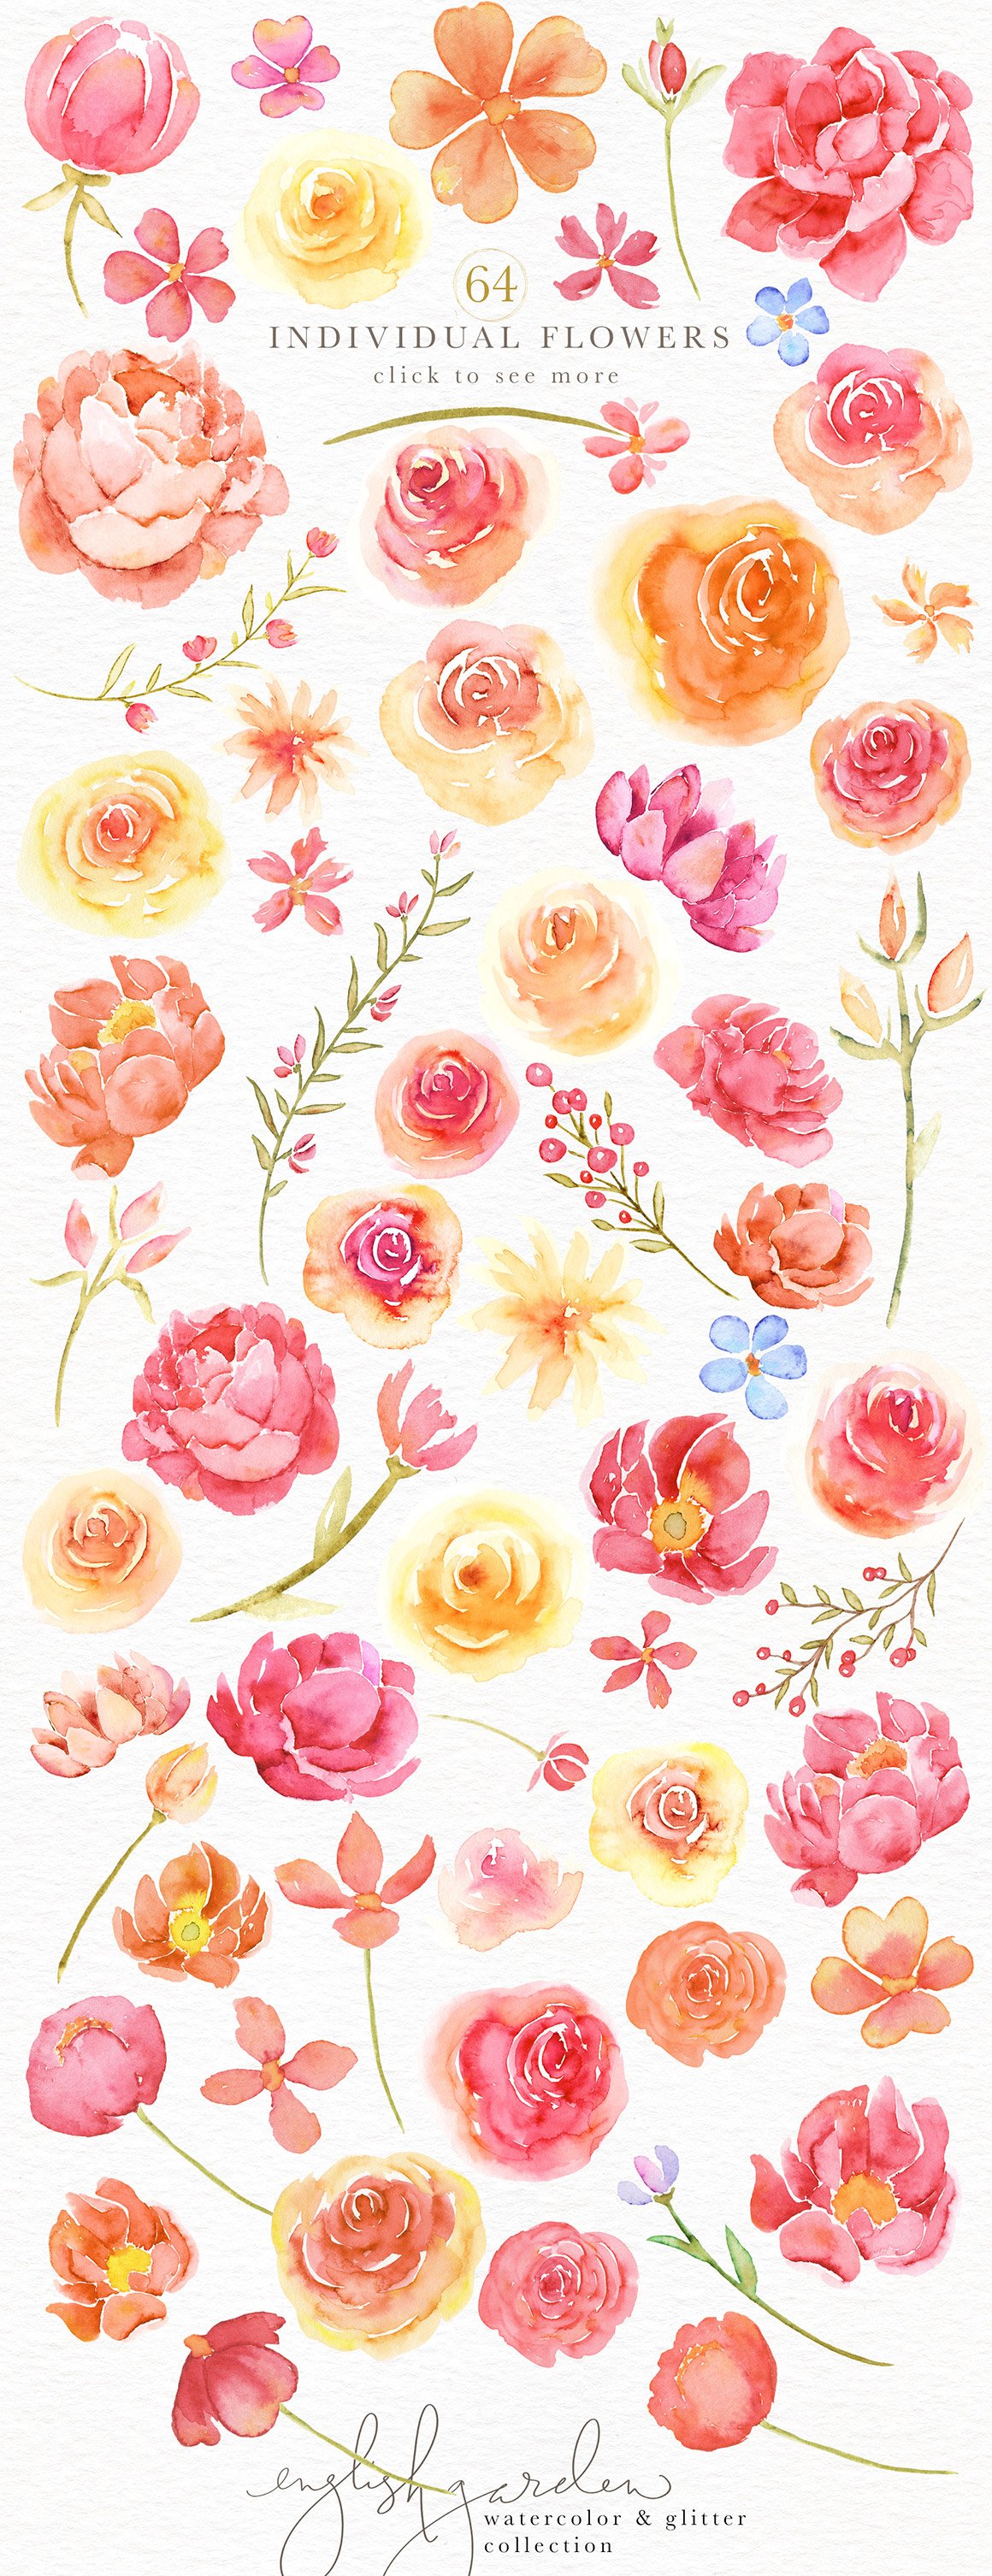 English Garden Watercolor Bundle